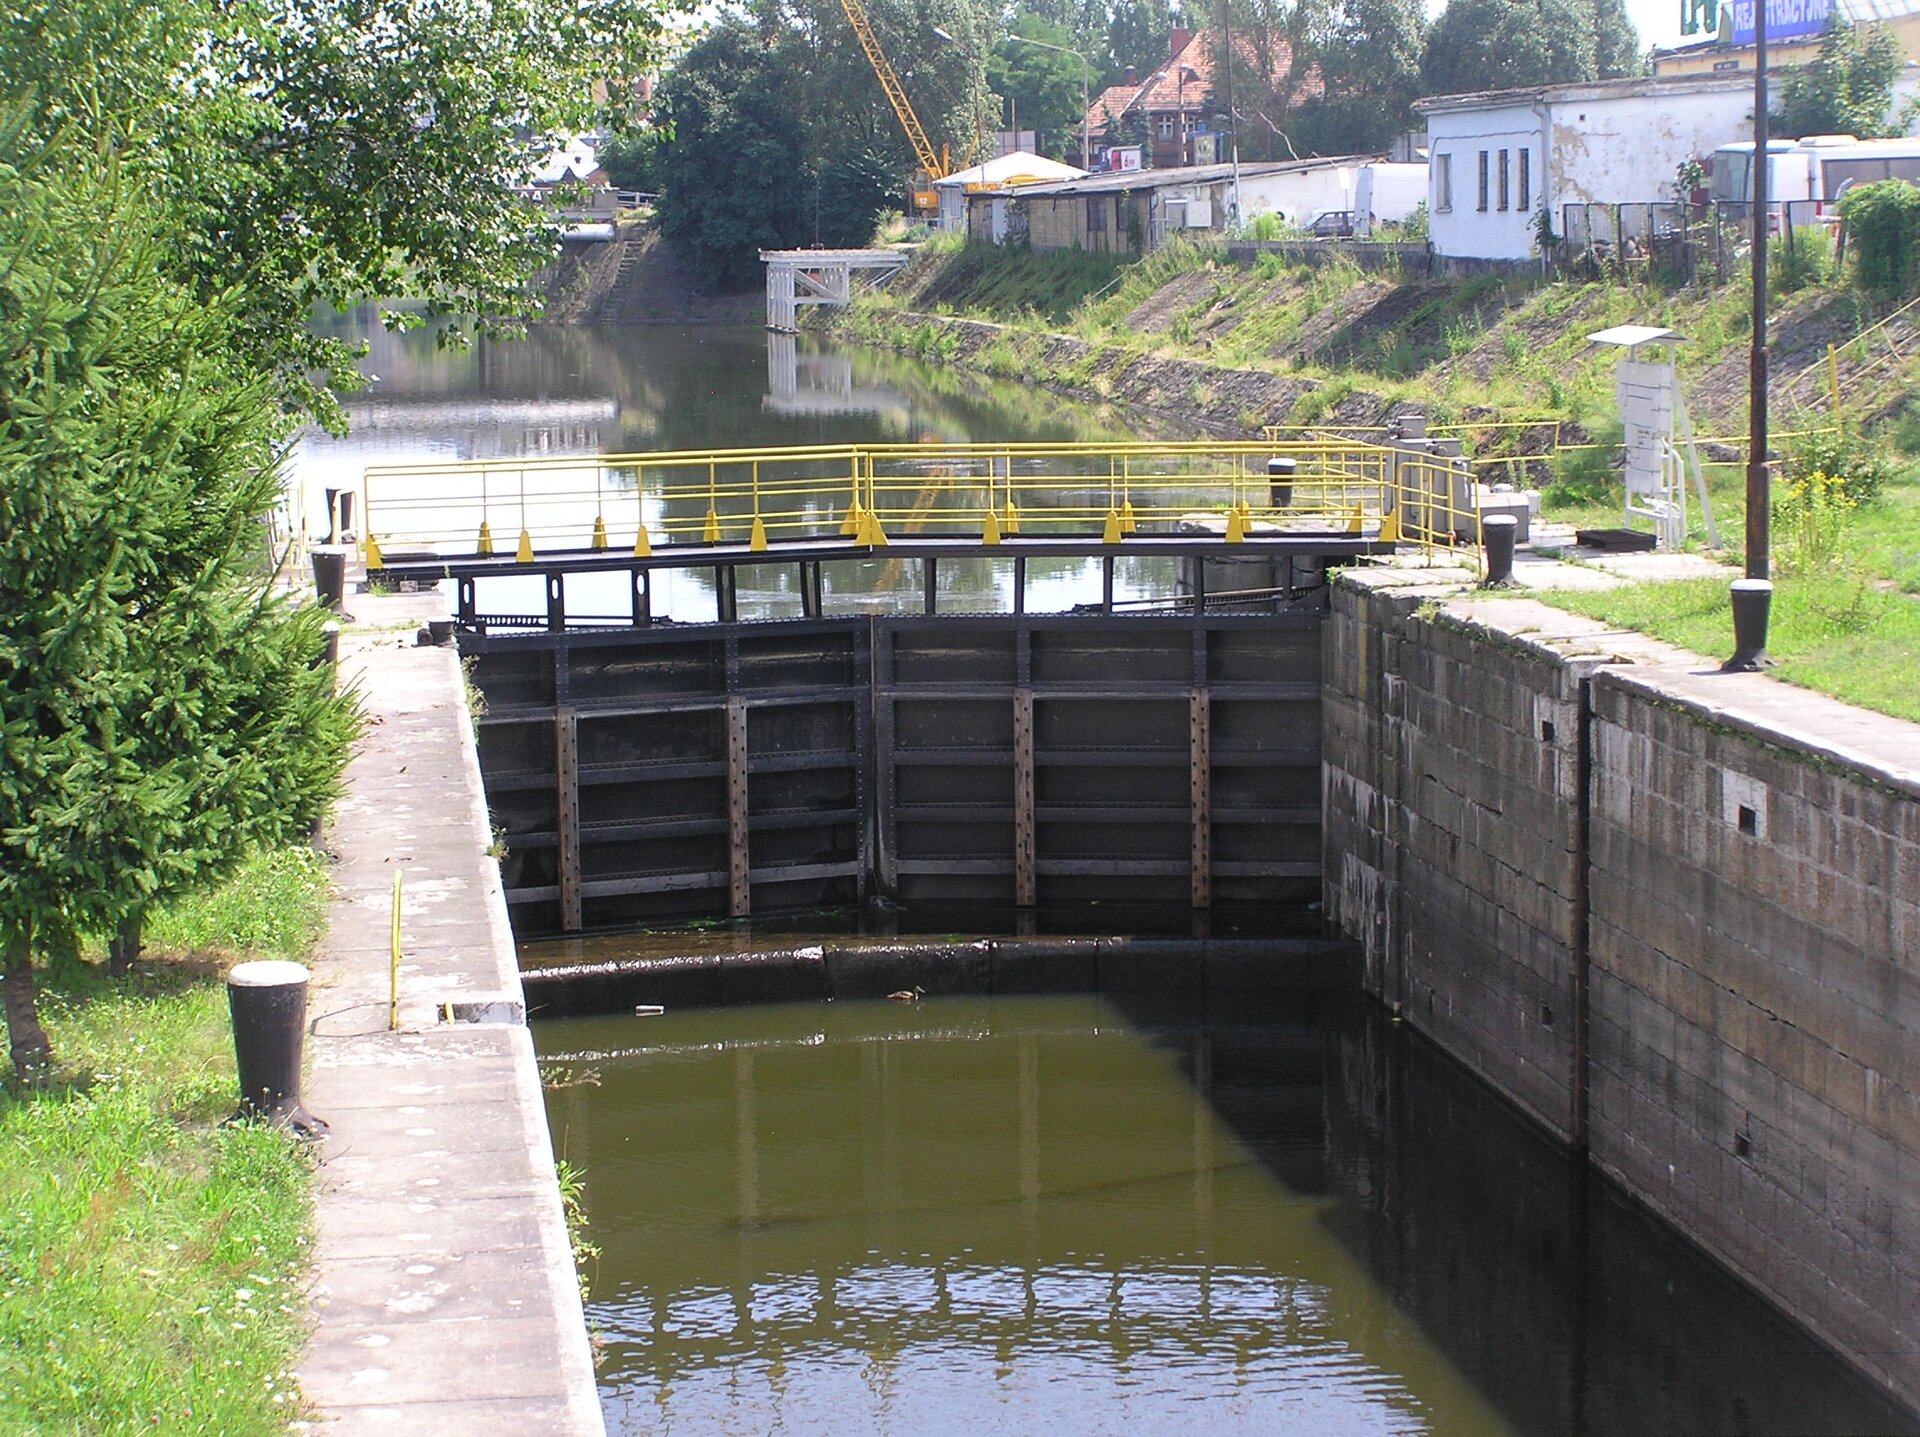 Fotografia prezentuje śluzę na kanale łączącym dwa zbiorniki o różnym poziomie wody. Śluza skład się z wrót, które zamykają się na kanale, zatrzymując przepływ wody.